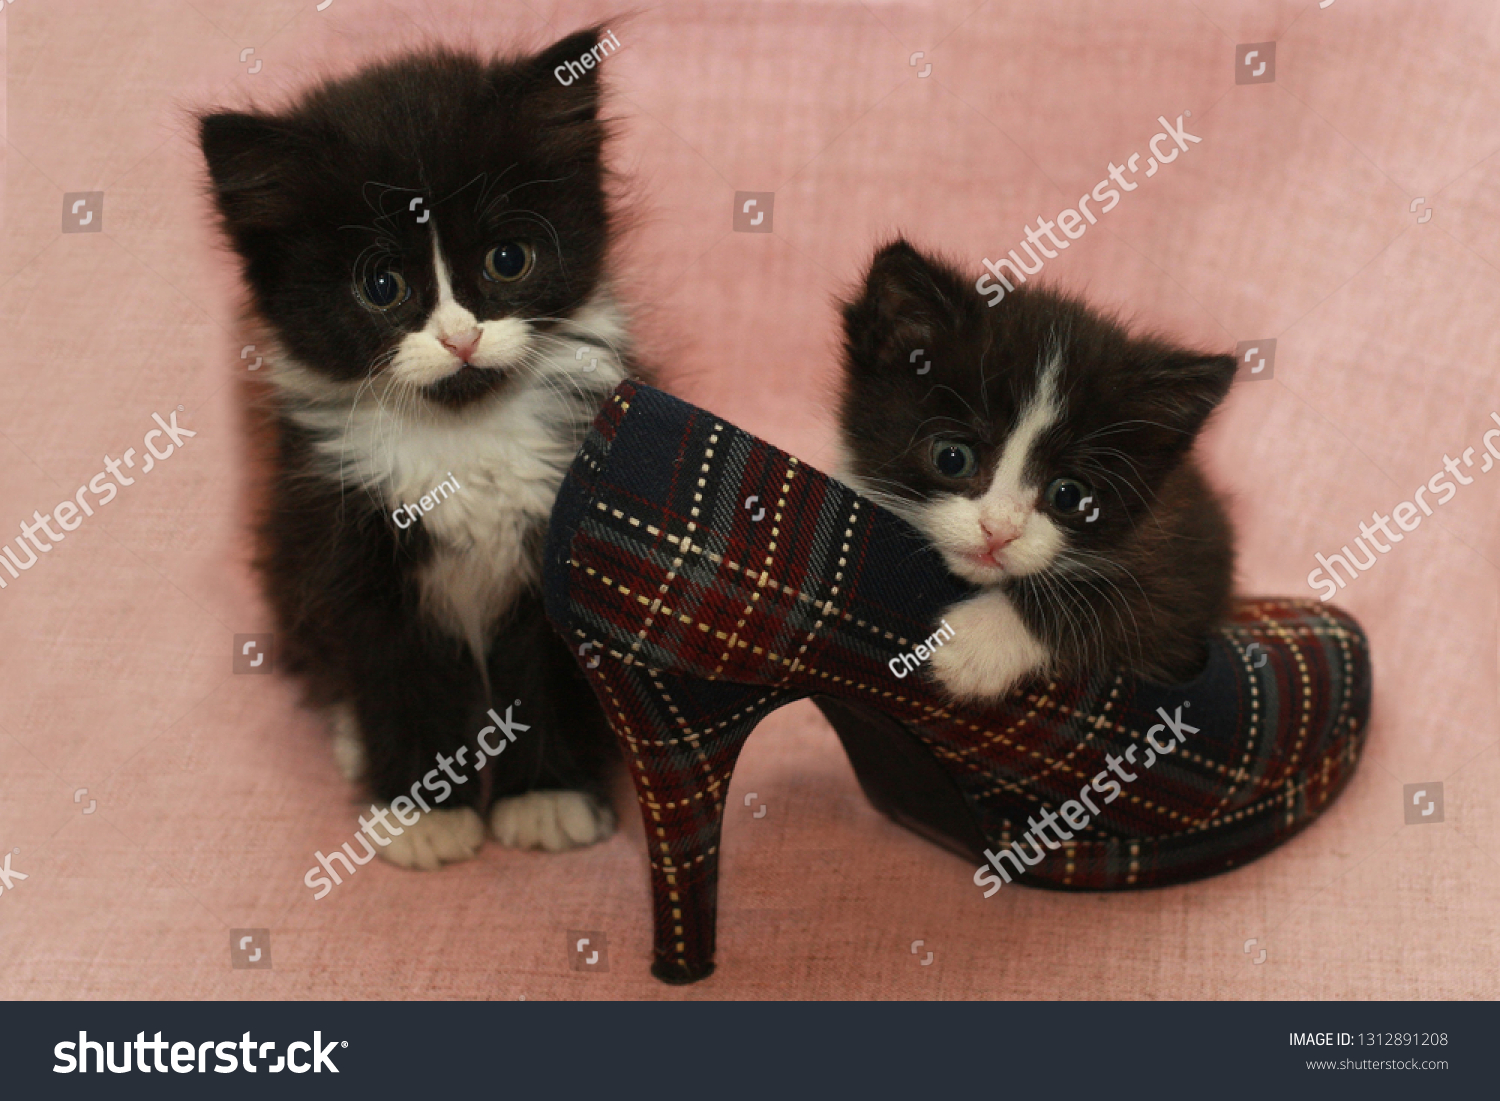 kittens shoe